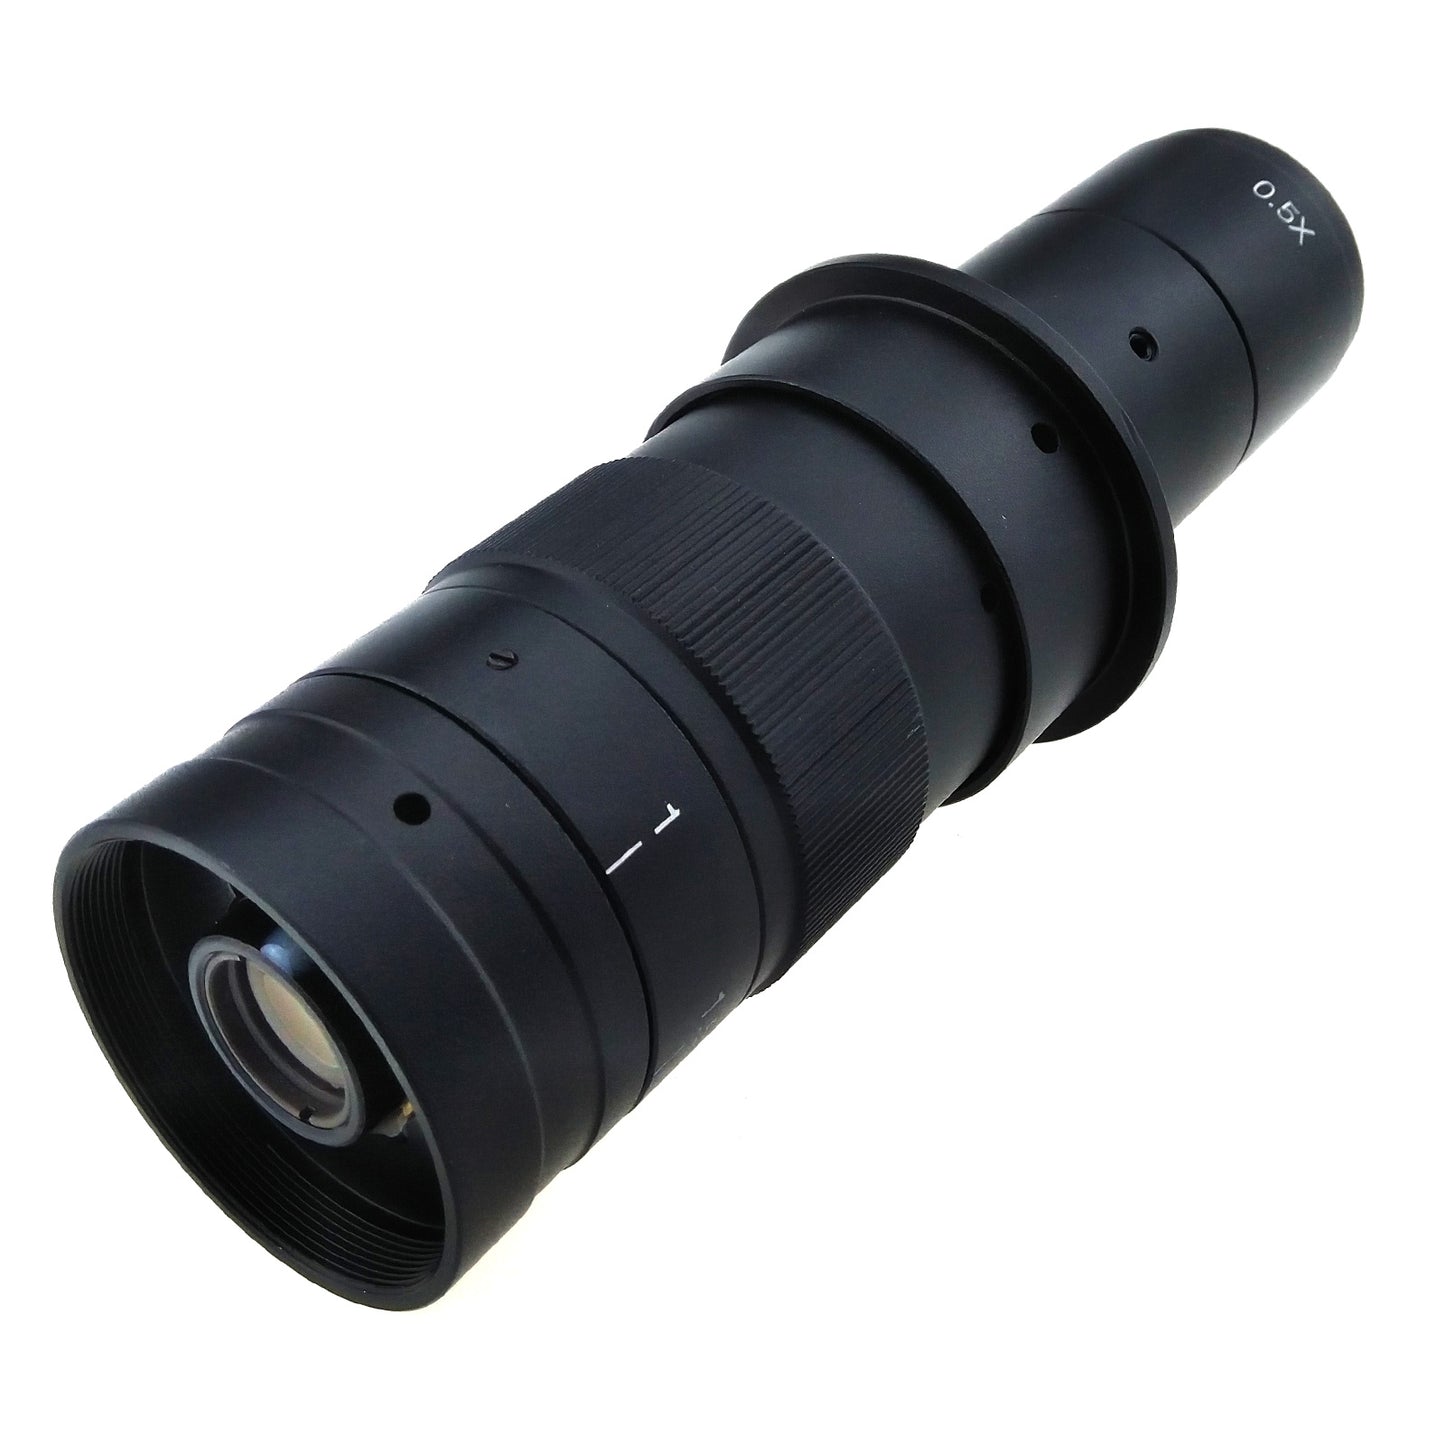 Kit de cámara para microscopio C60 HDMI (con luz, lente y soporte)